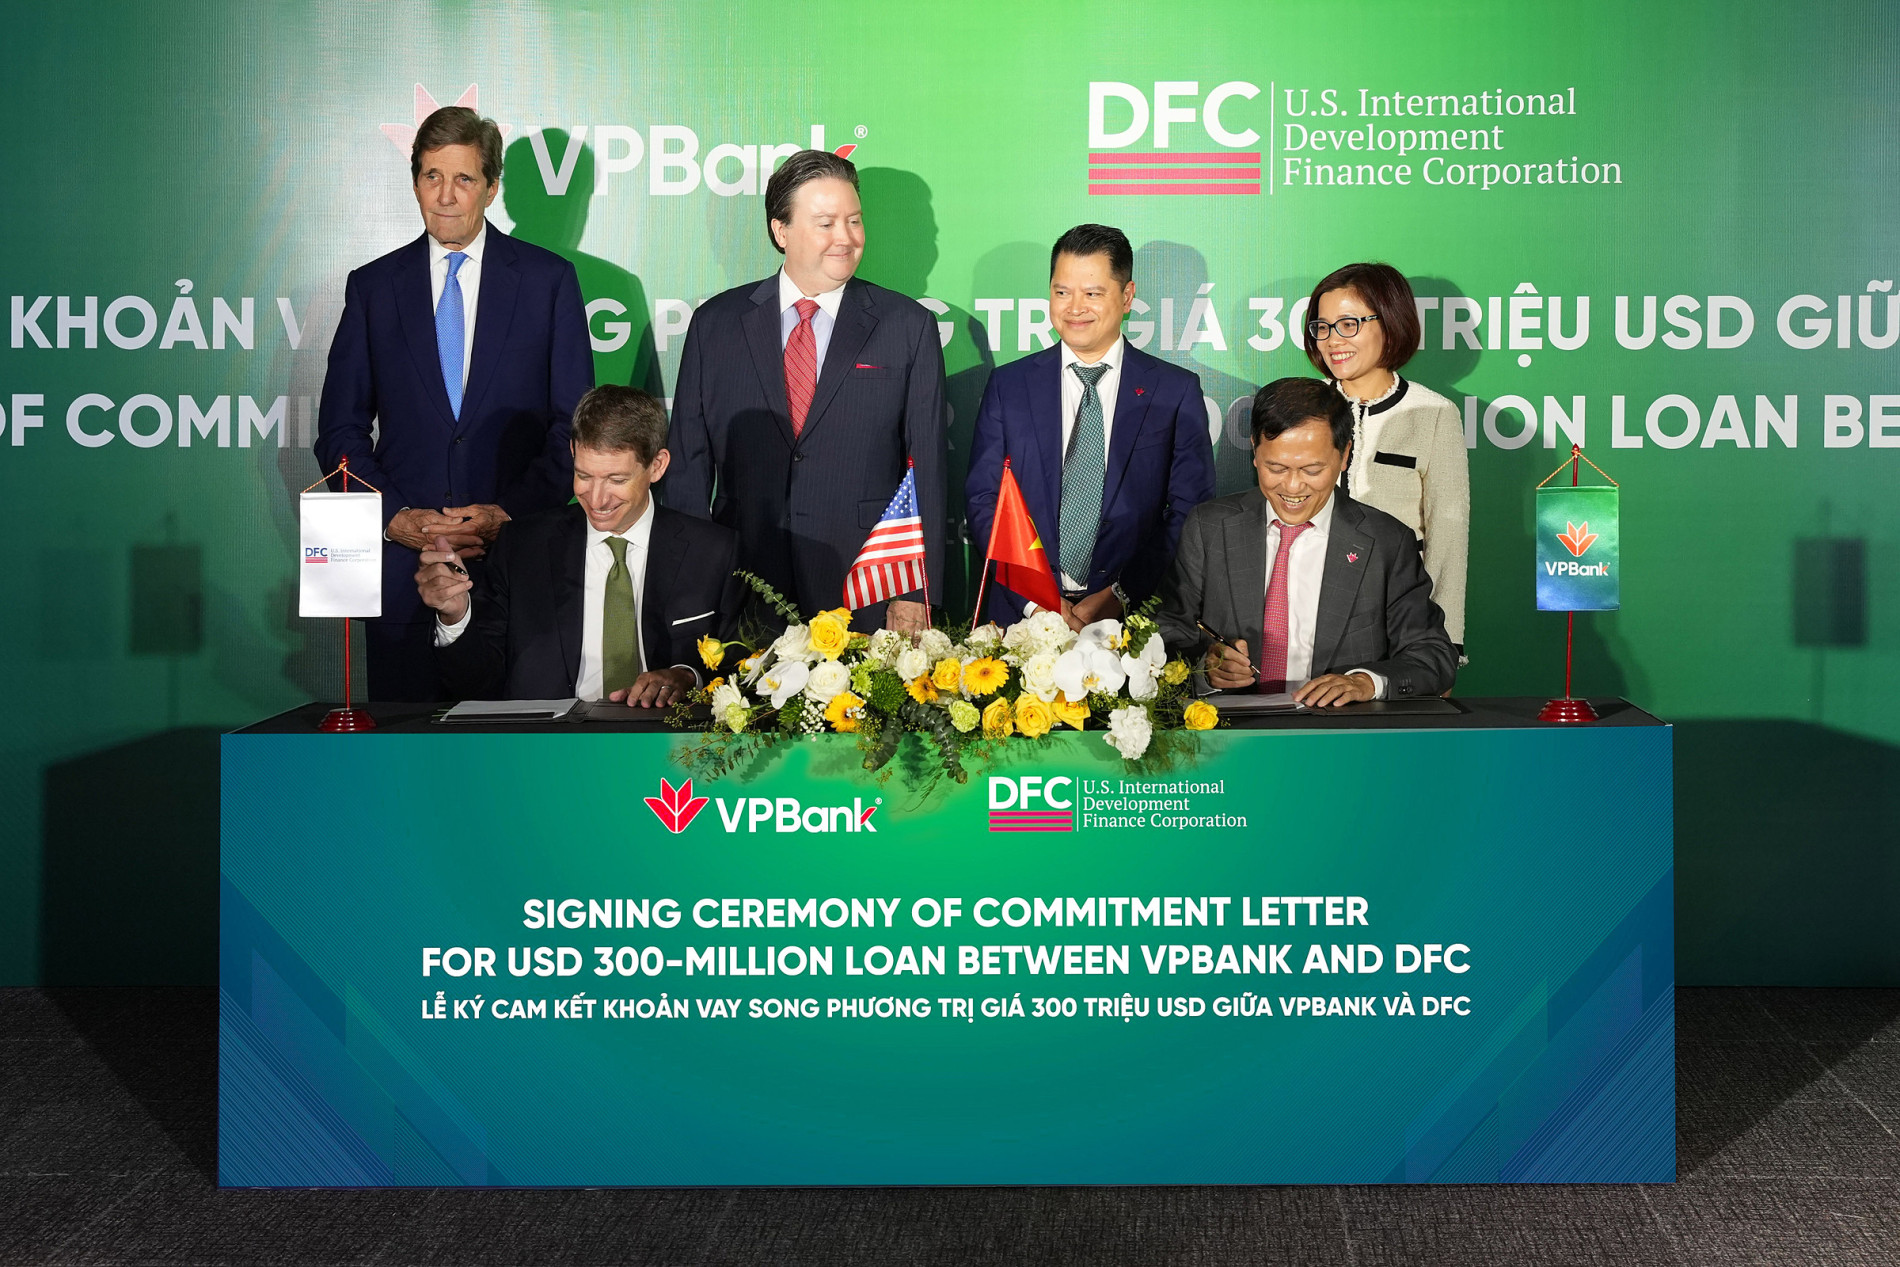 Đại diện lãnh đạo DFC và VPBank ký cam kết khoản vay song phương trị giá 300 triệu USD. Ảnh: VPBank